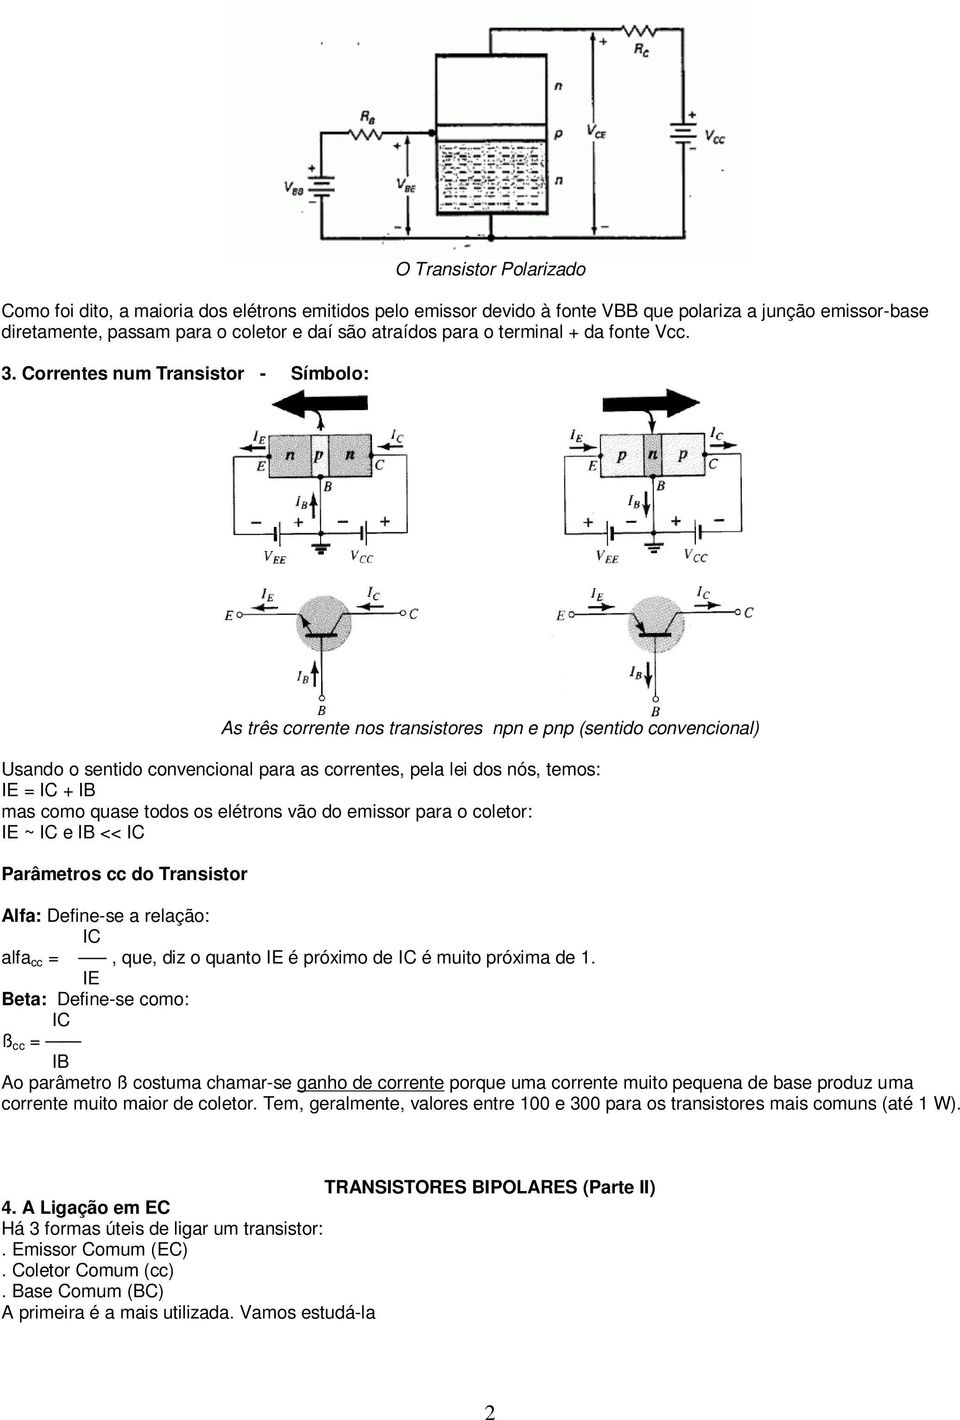 Correntes num Transistor - Símbolo: As três corrente nos transistores npn e pnp (sentido convencional) Usando o sentido convencional para as correntes, pela lei dos nós, temos: IE = IC + IB mas como